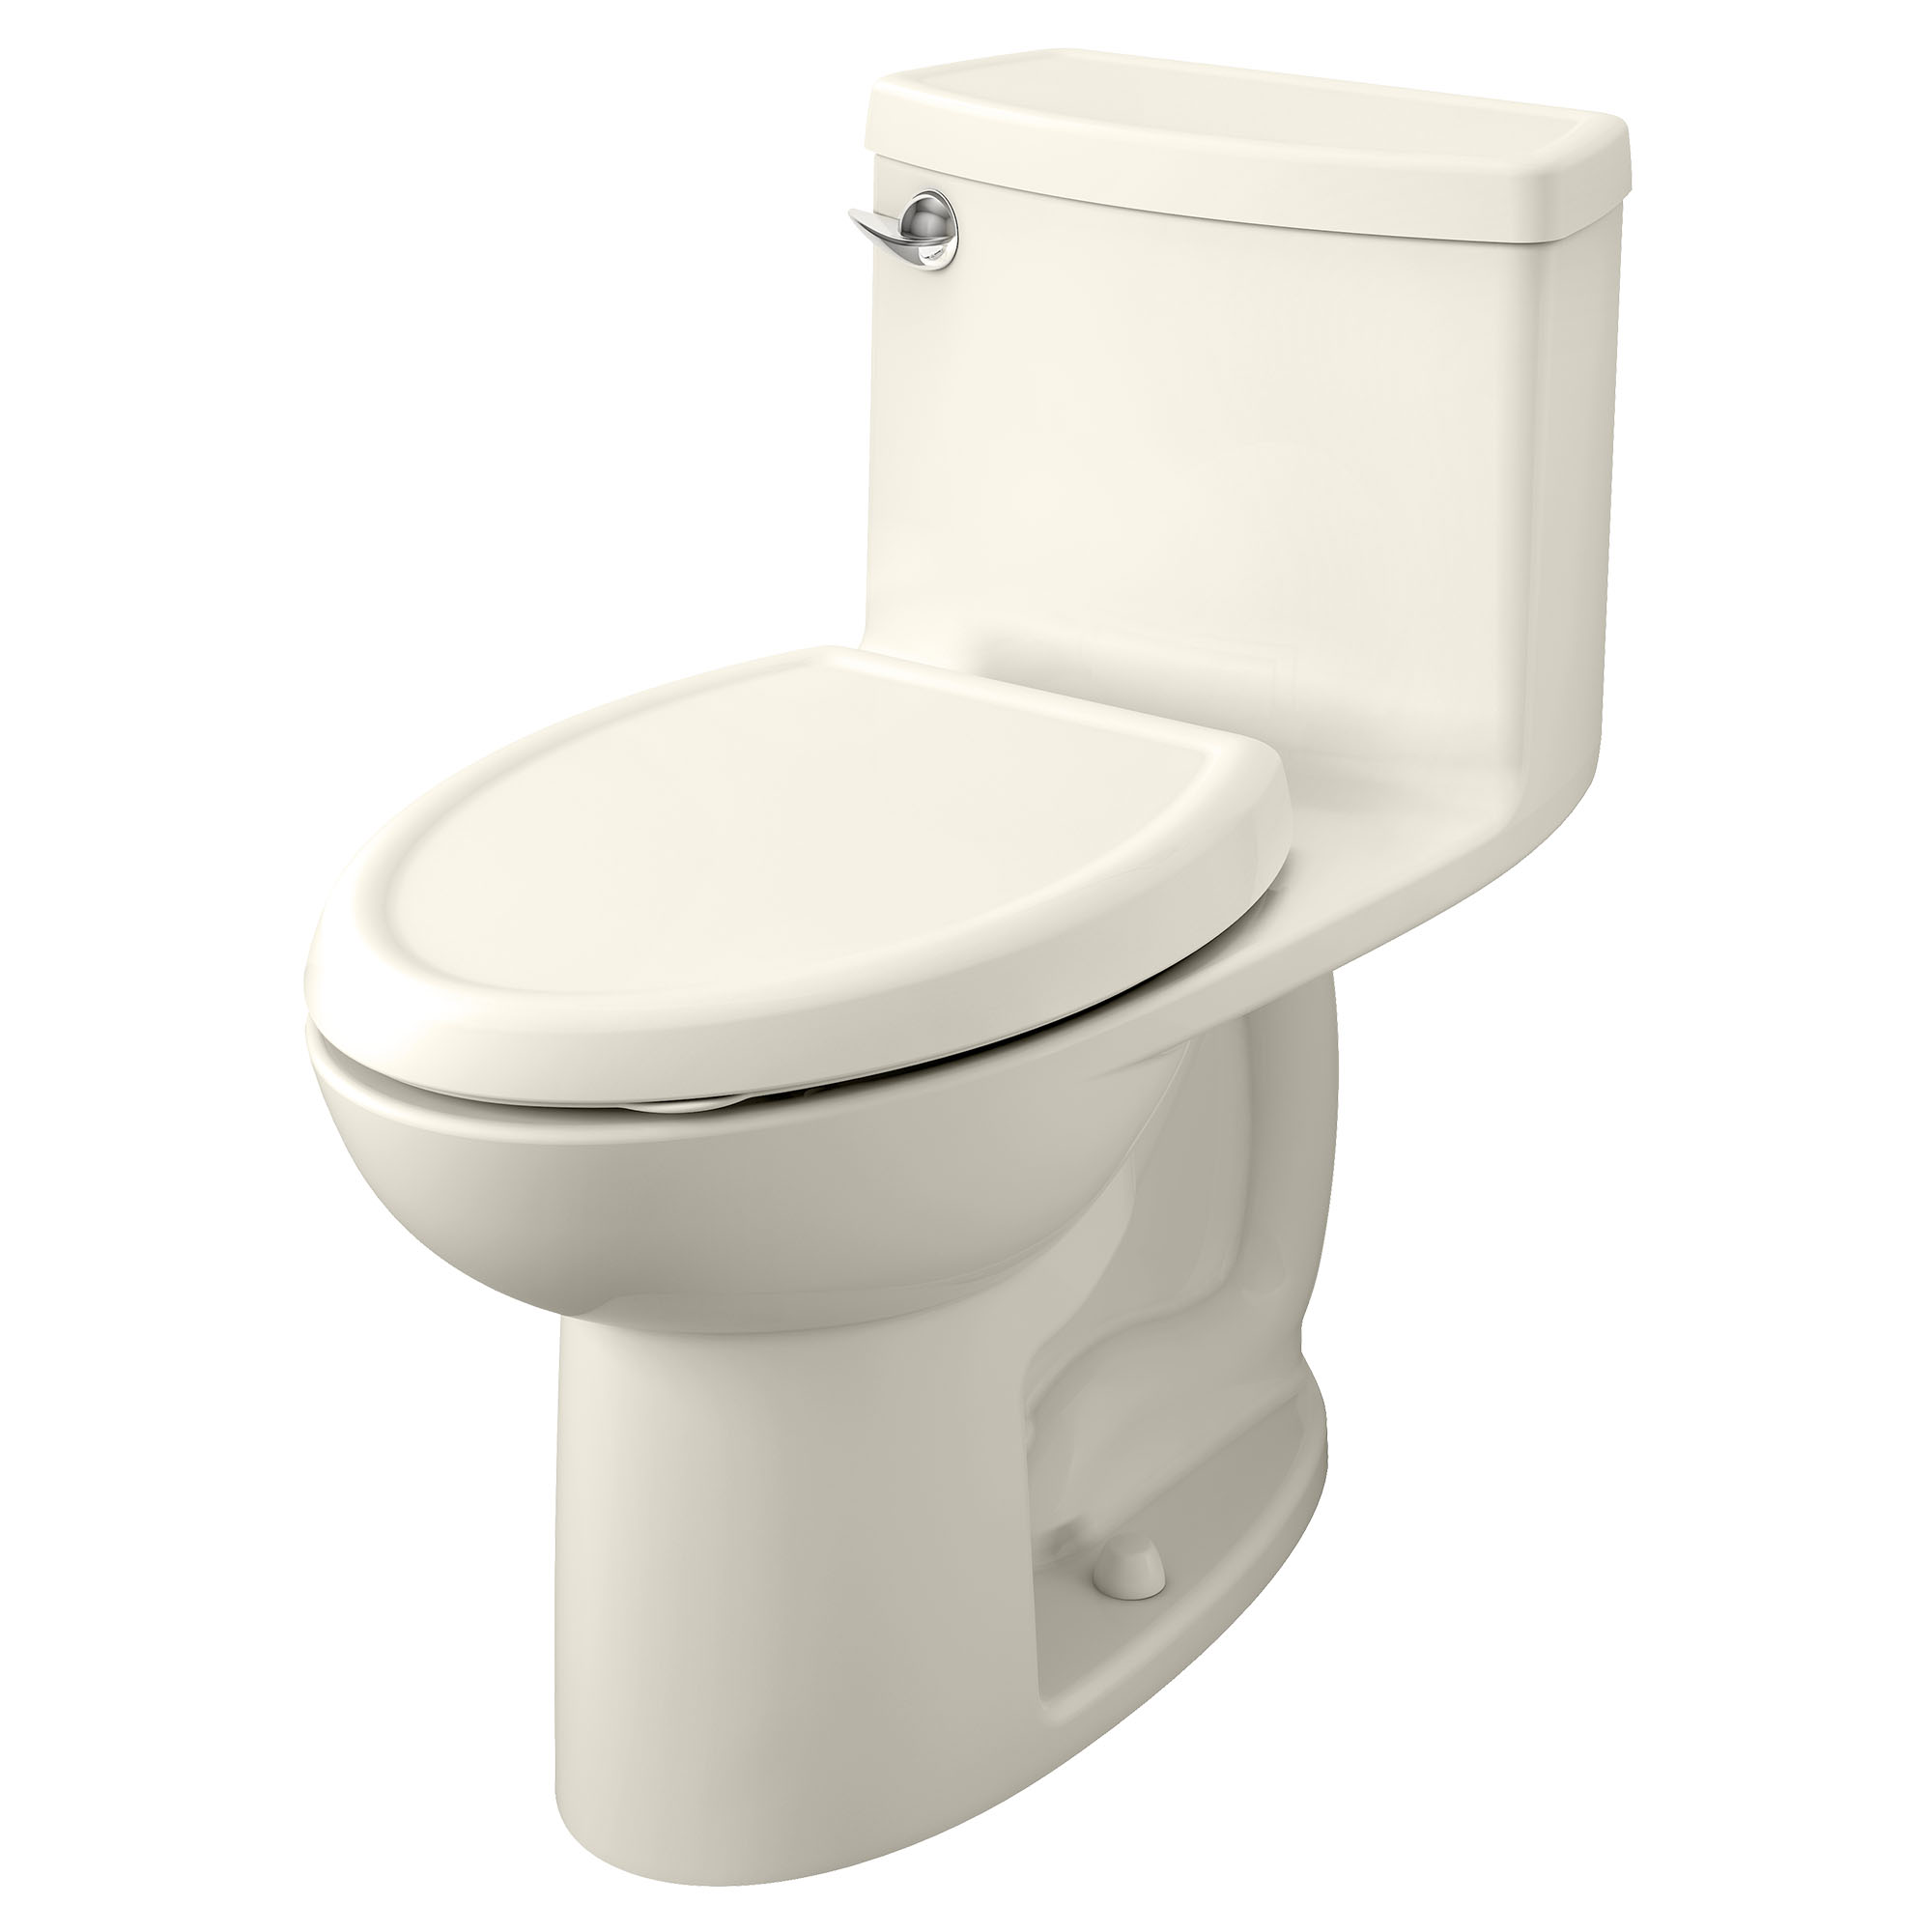 Toilette monopièce Compacte Cadet 3, 1,28 gpc/4,8 lpc, à cuvette allongée à hauteur de chaise avec siège